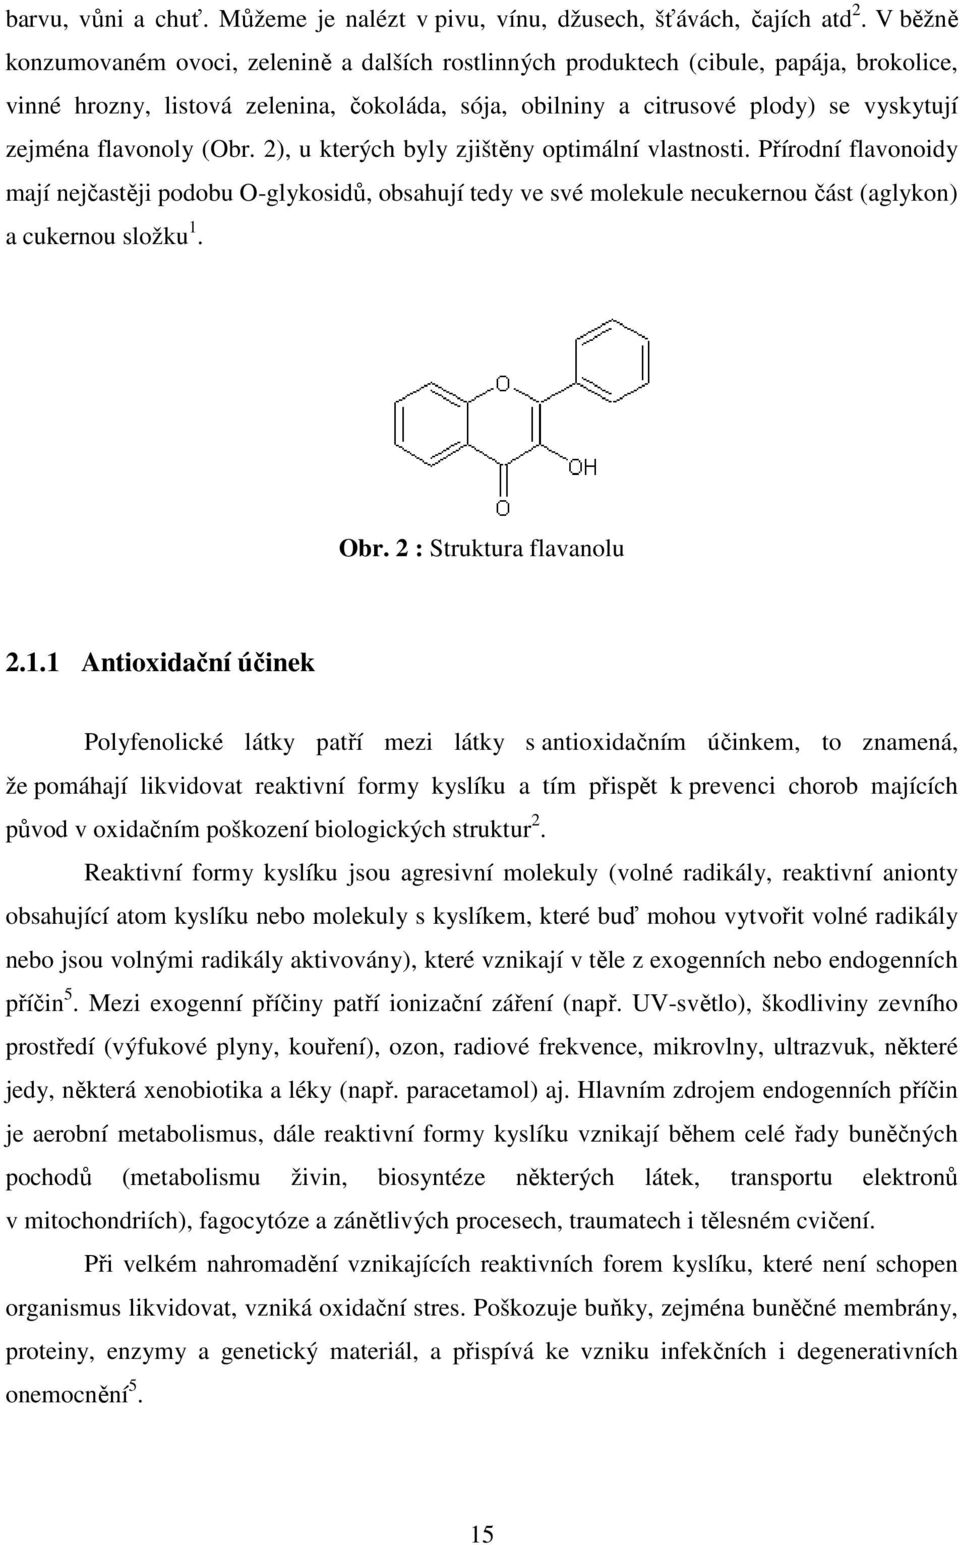 flavonoly (Obr. 2), u kterých byly zjištěny optimální vlastnosti. Přírodní flavonoidy mají nejčastěji podobu O-glykosidů, obsahují tedy ve své molekule necukernou část (aglykon) a cukernou složku 1.